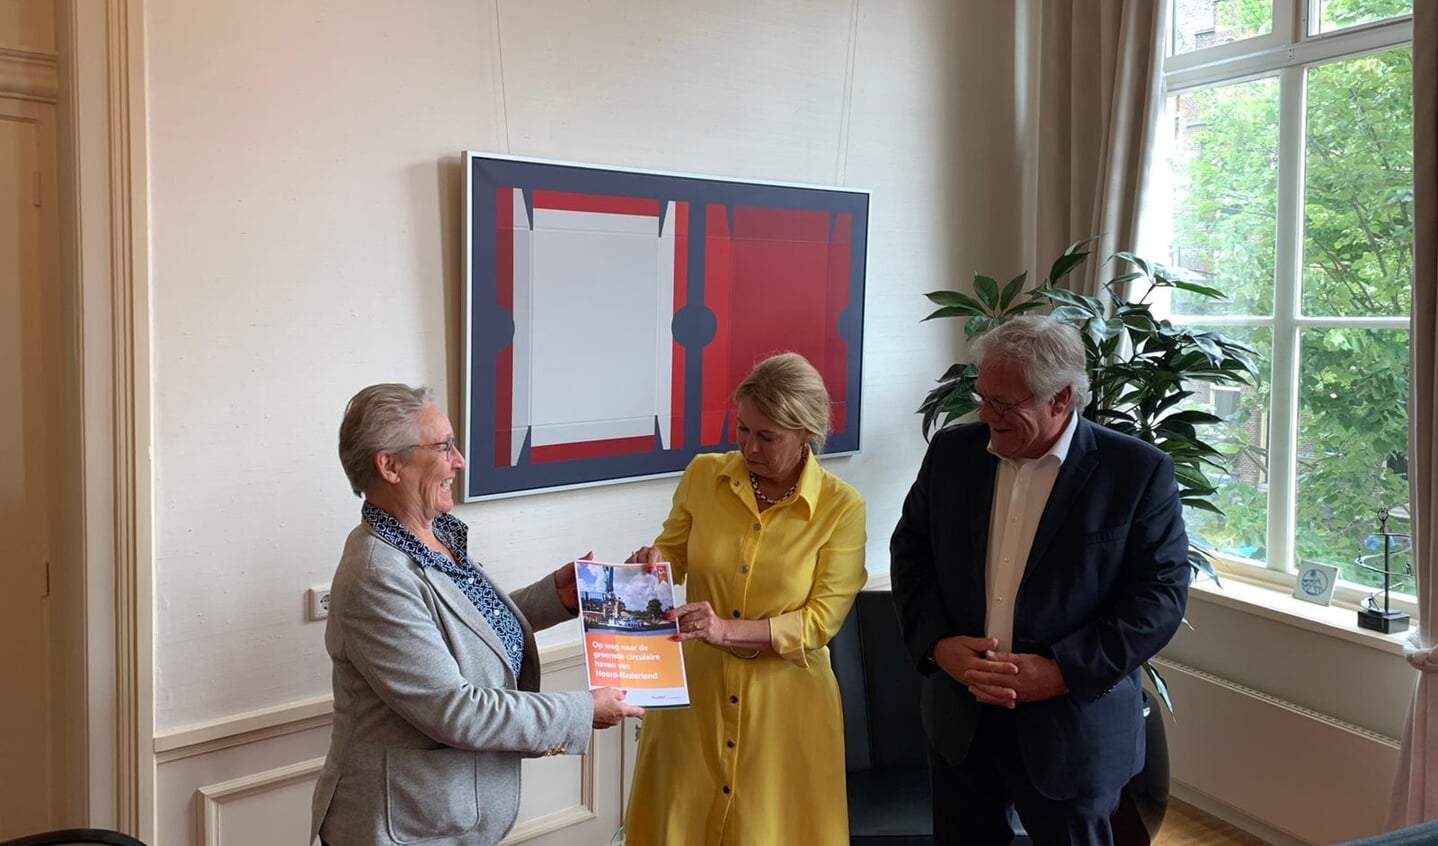 Gedeputeerde Avine Fokkens-Kelder (midden) neemt de brochure 'De groenste haven van Noord-Nederland' in ontvangst van de wethouders Maria le Roy en Robin Hartogh Heys van Smallingerland.